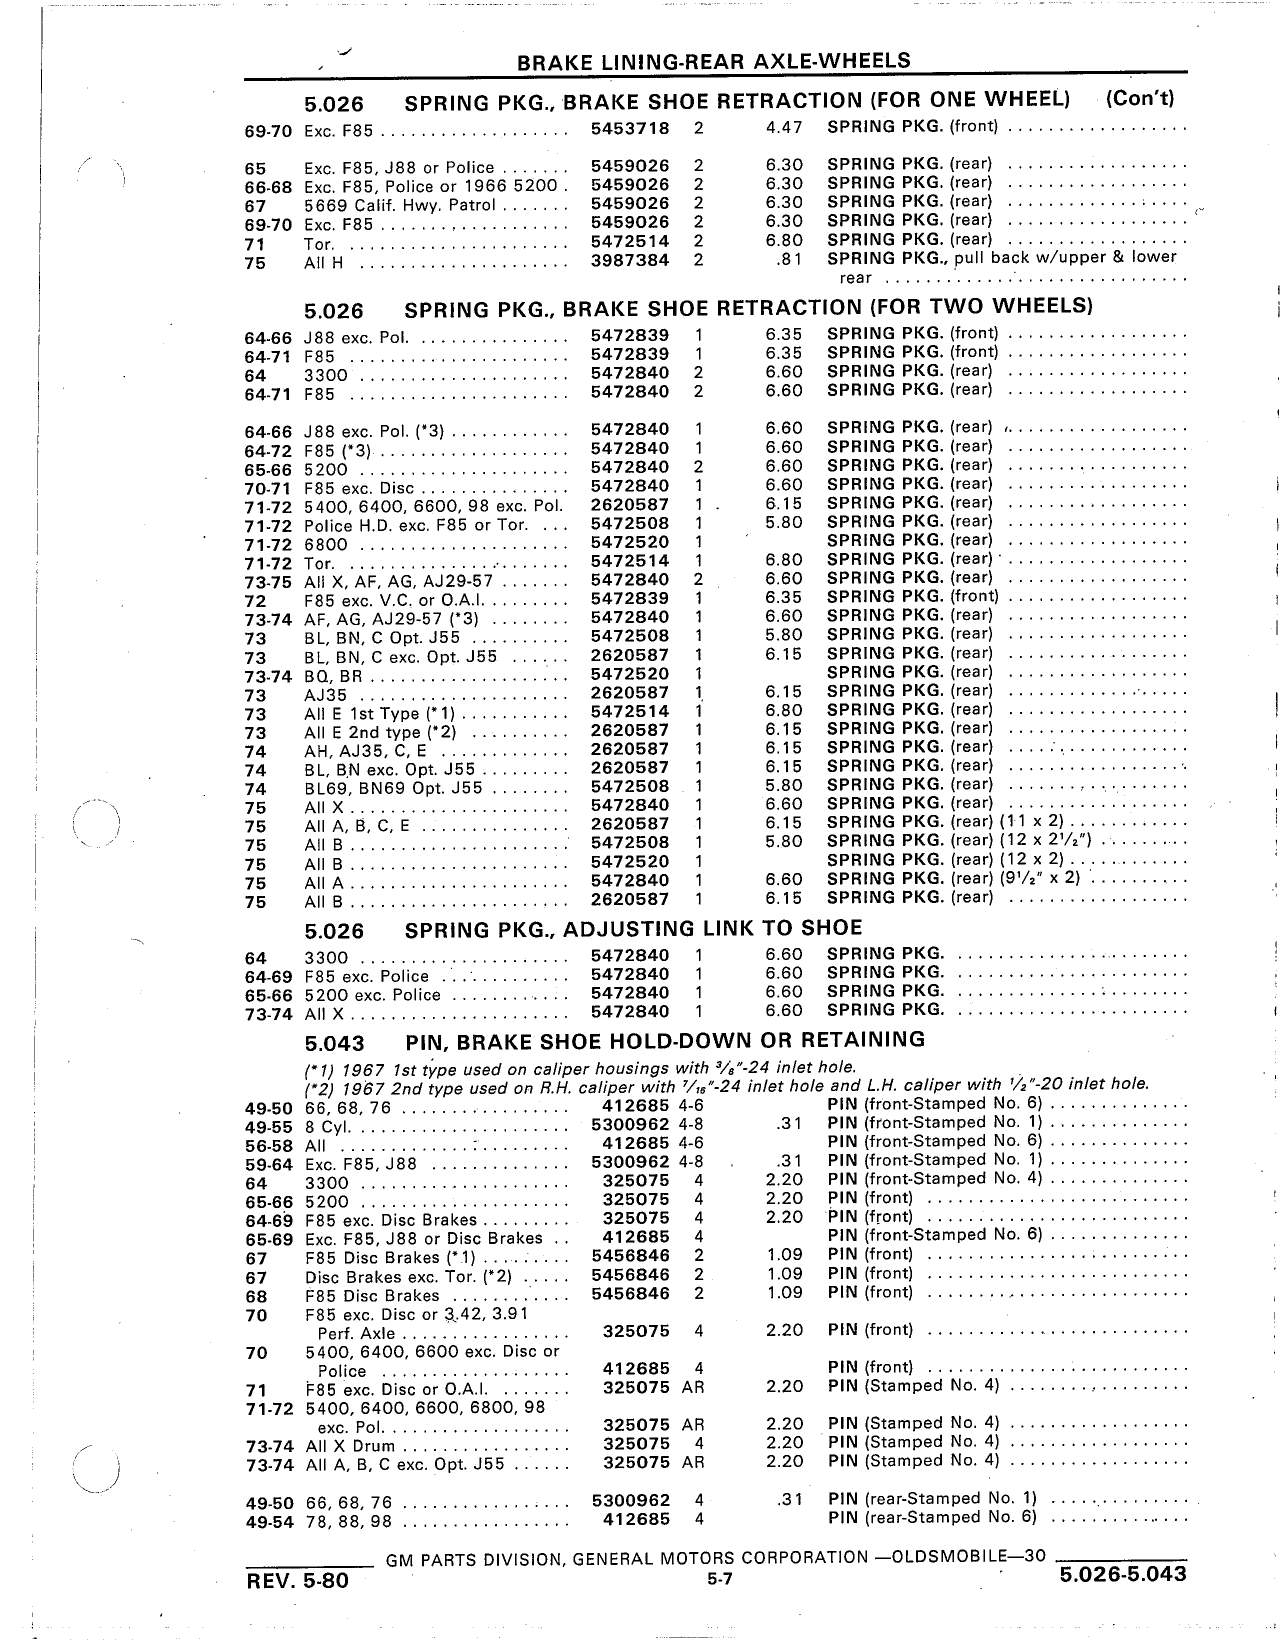 Parts Catalog 31 May 1980